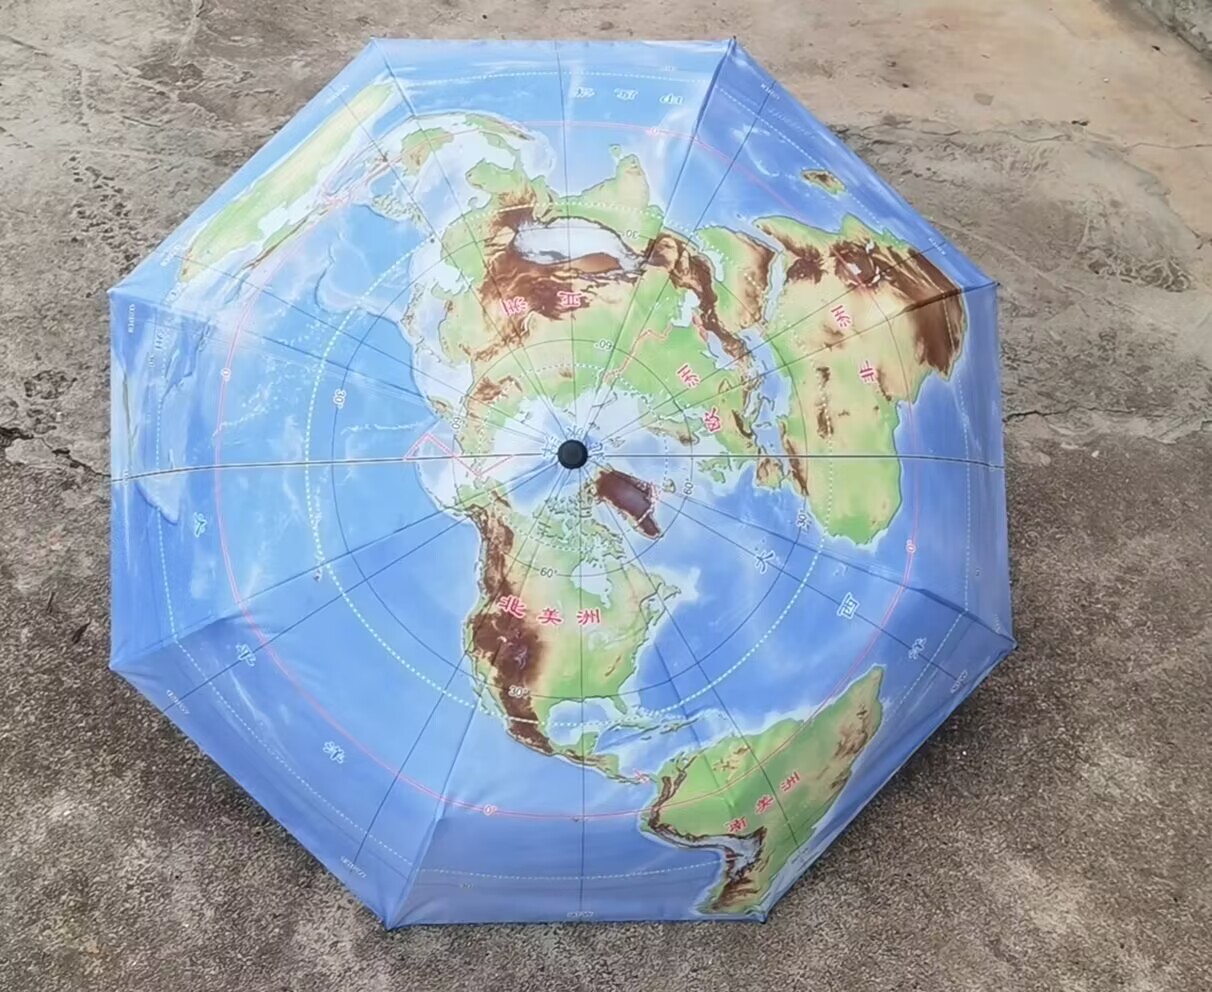 新品地图伞三折叠晴雨伞展示别致北极为中心50°S以北海陆雨季